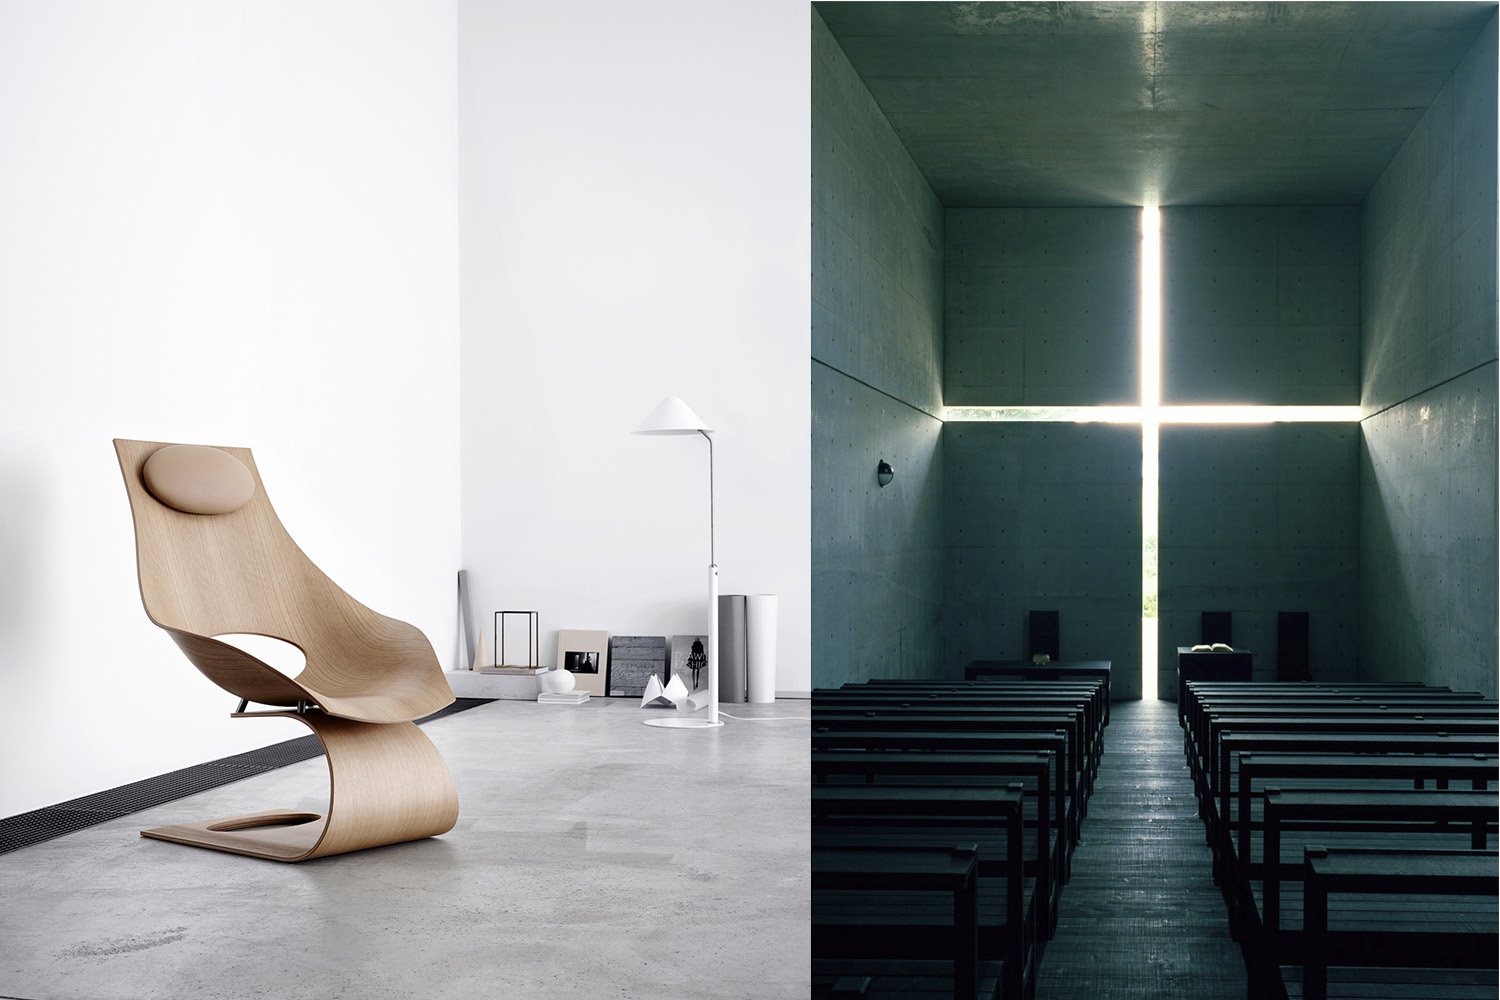 Silla de Tadao Ando y la iglesia de la luz